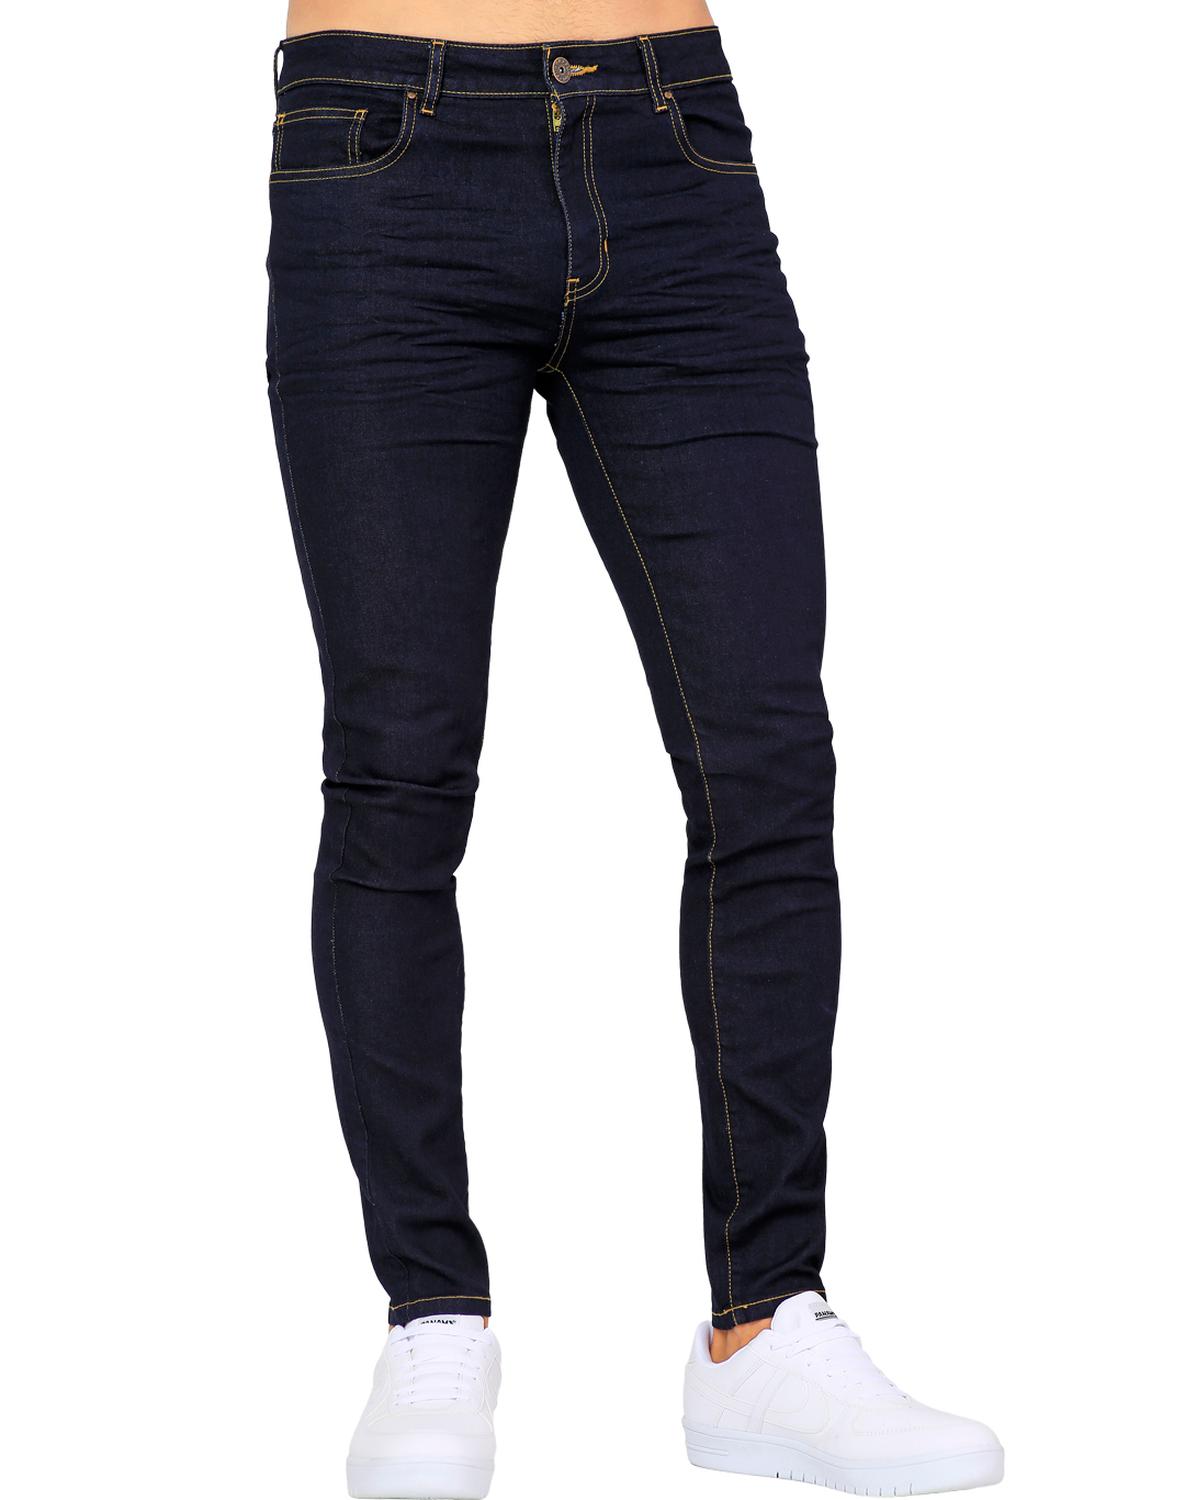 Jeans Básico Hombre Furor Indigo 62105607 Mezclilla Stretch – SALVAJE  TENTACIÓN